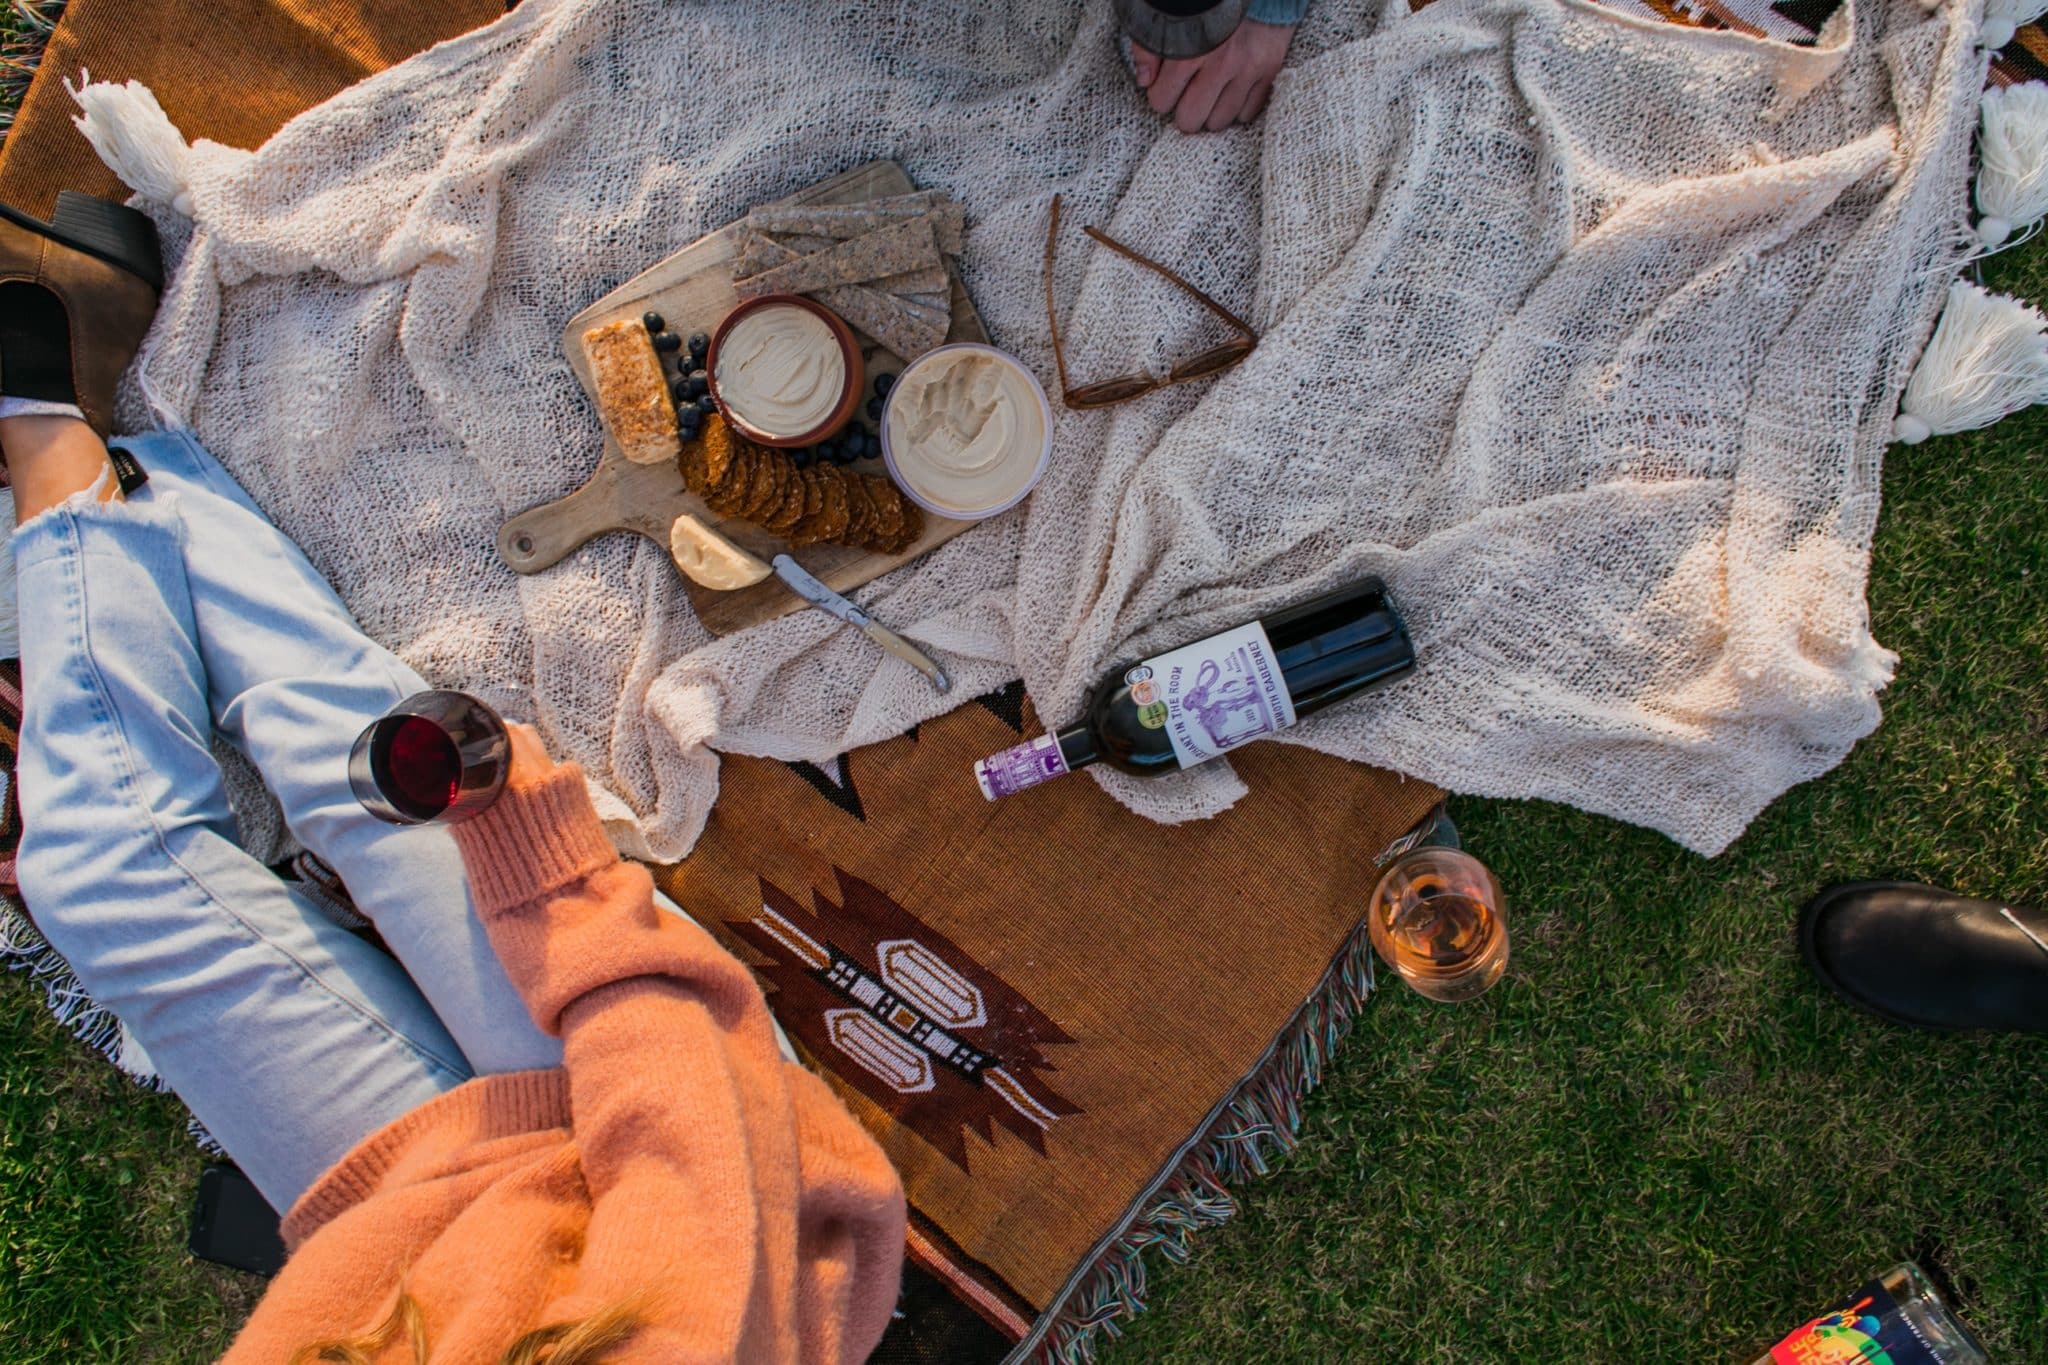 picnic con vino, humus, tostadas y fruta encima de una manta y hombre sujetando copa de vino